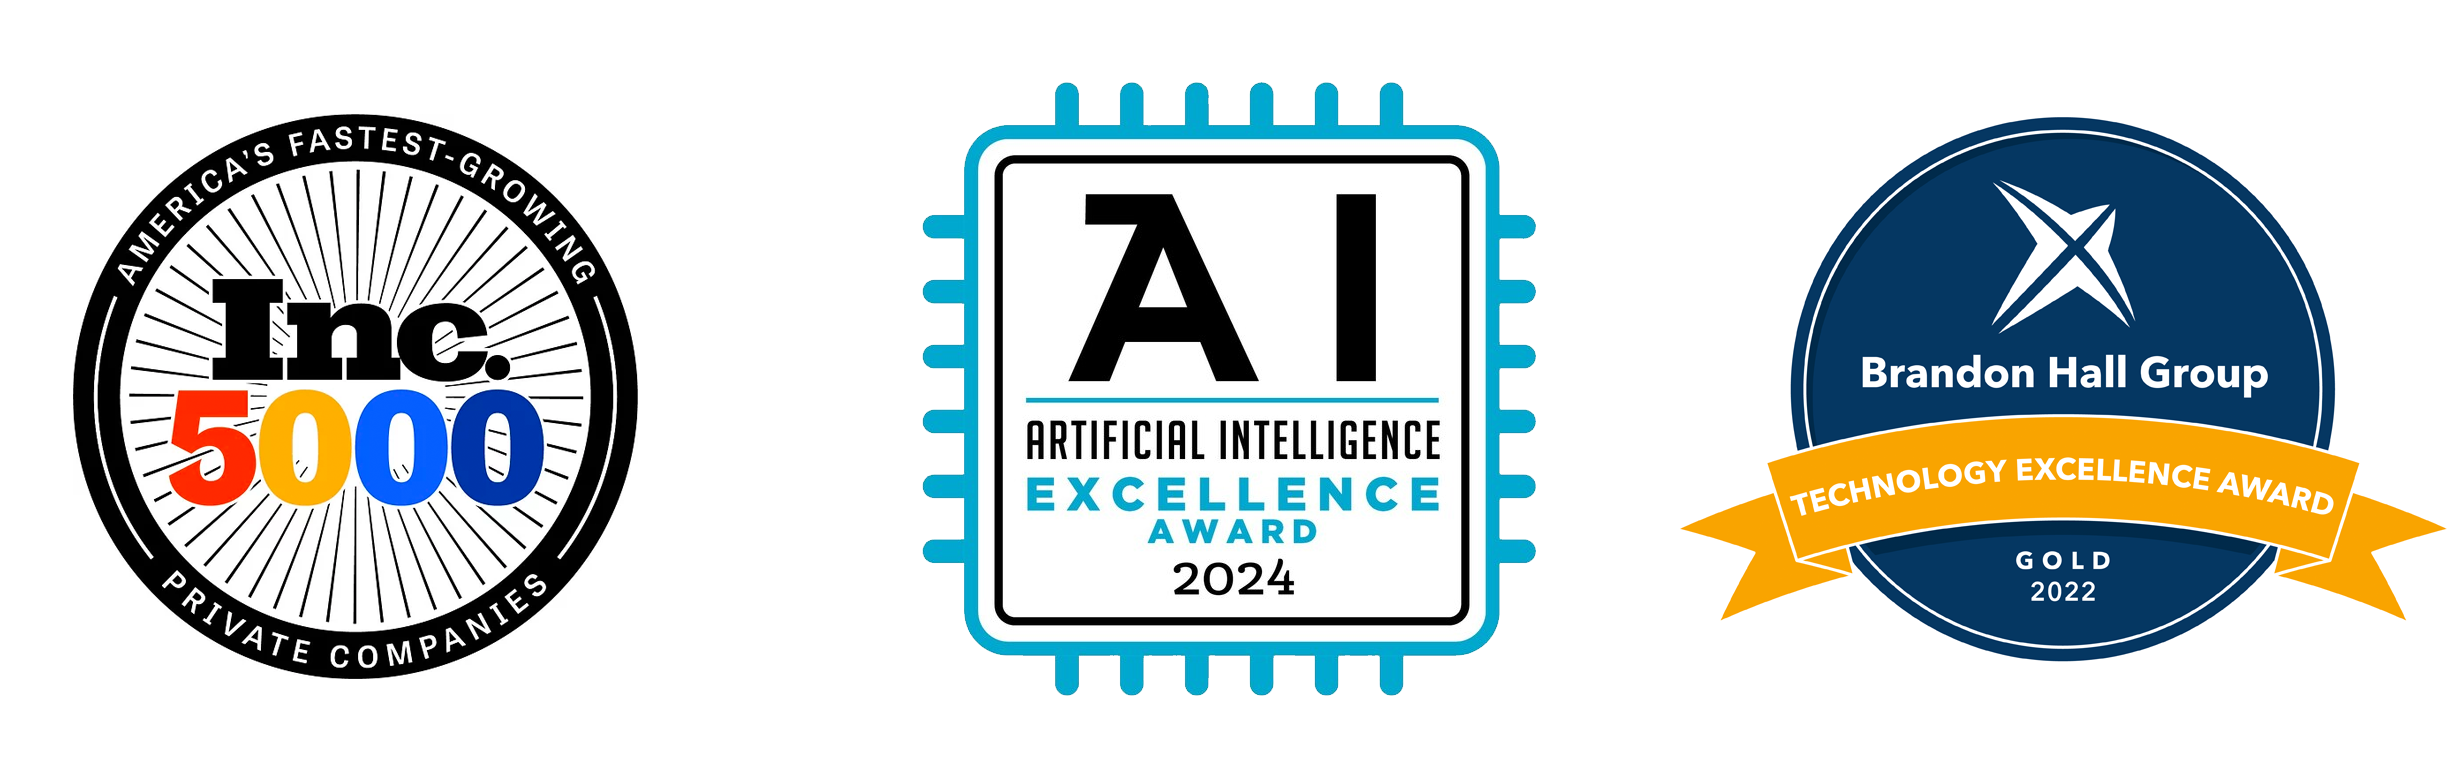 Inc 5000, AI Excellence 2023, Brandon Hall Tech Excellence Award Gold 2022